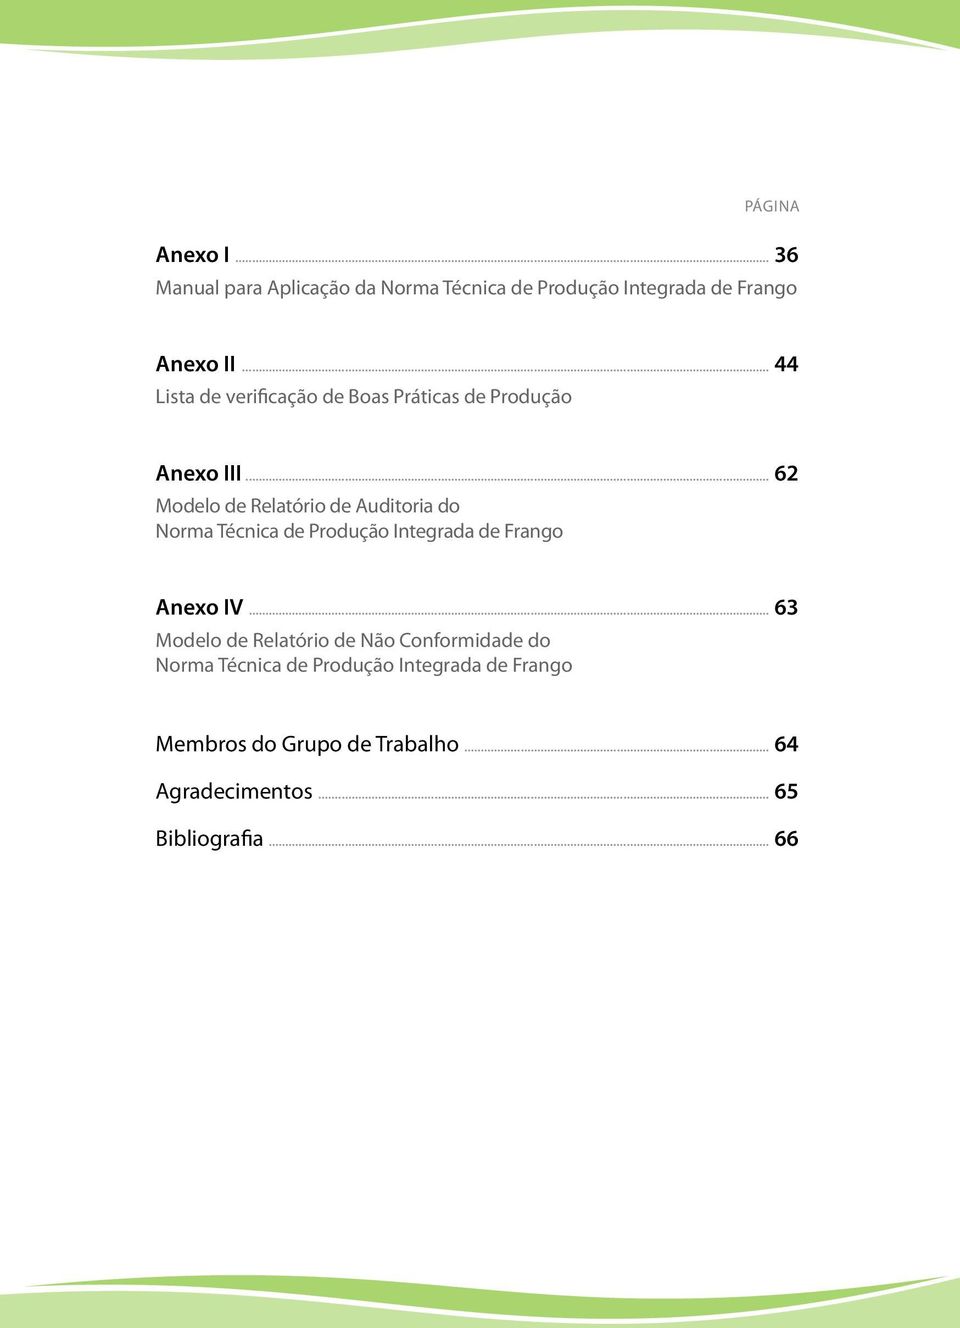 .. 62 Modelo de Relatório de Auditoria do Norma Técnica de Produção Integrada de Frango Anexo IV.